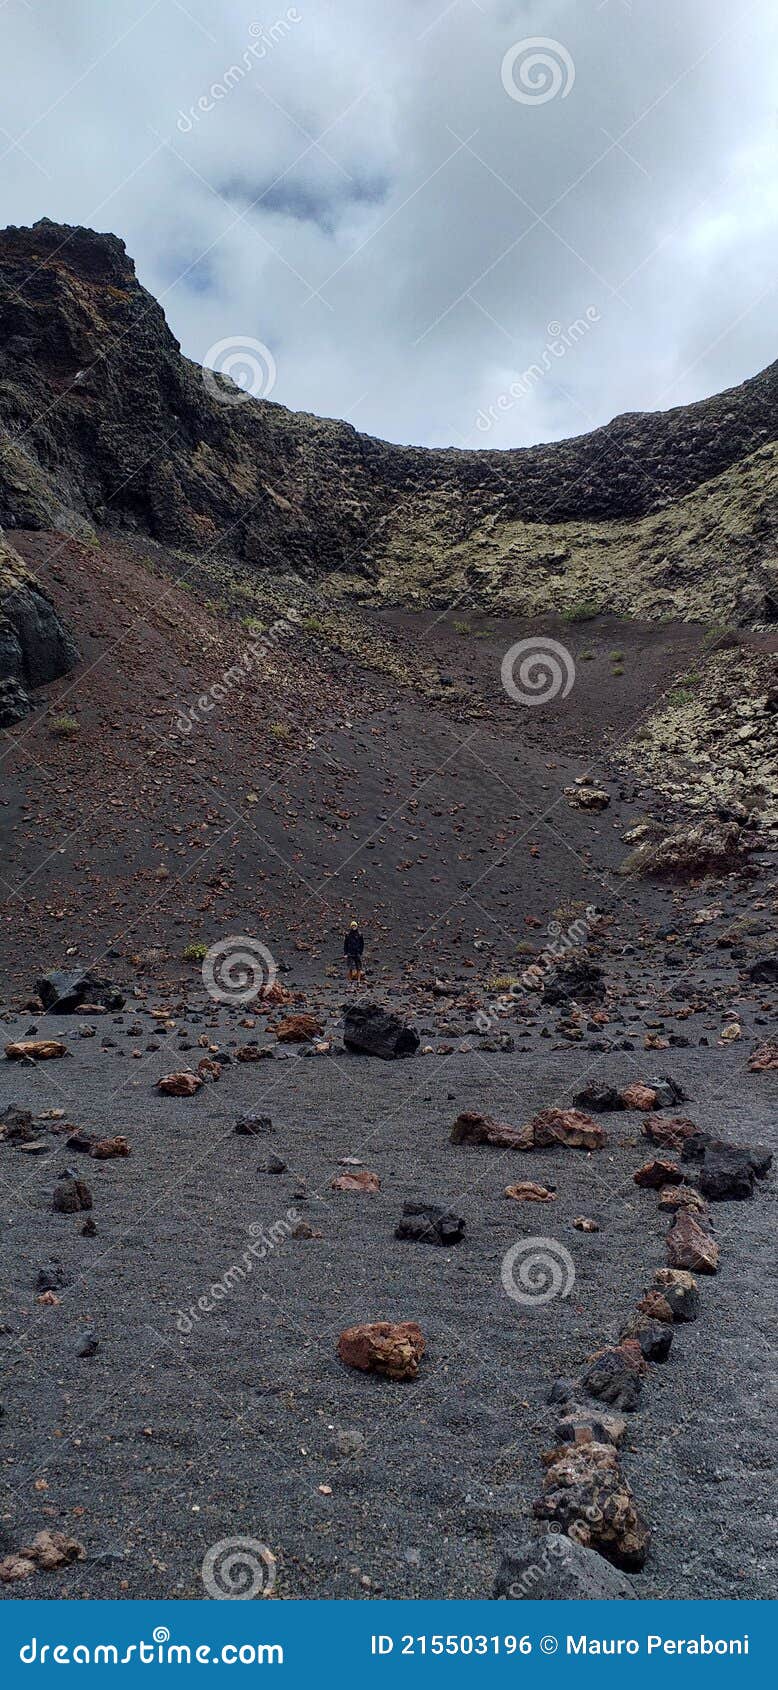 dentro il cratere di un vulcano spento